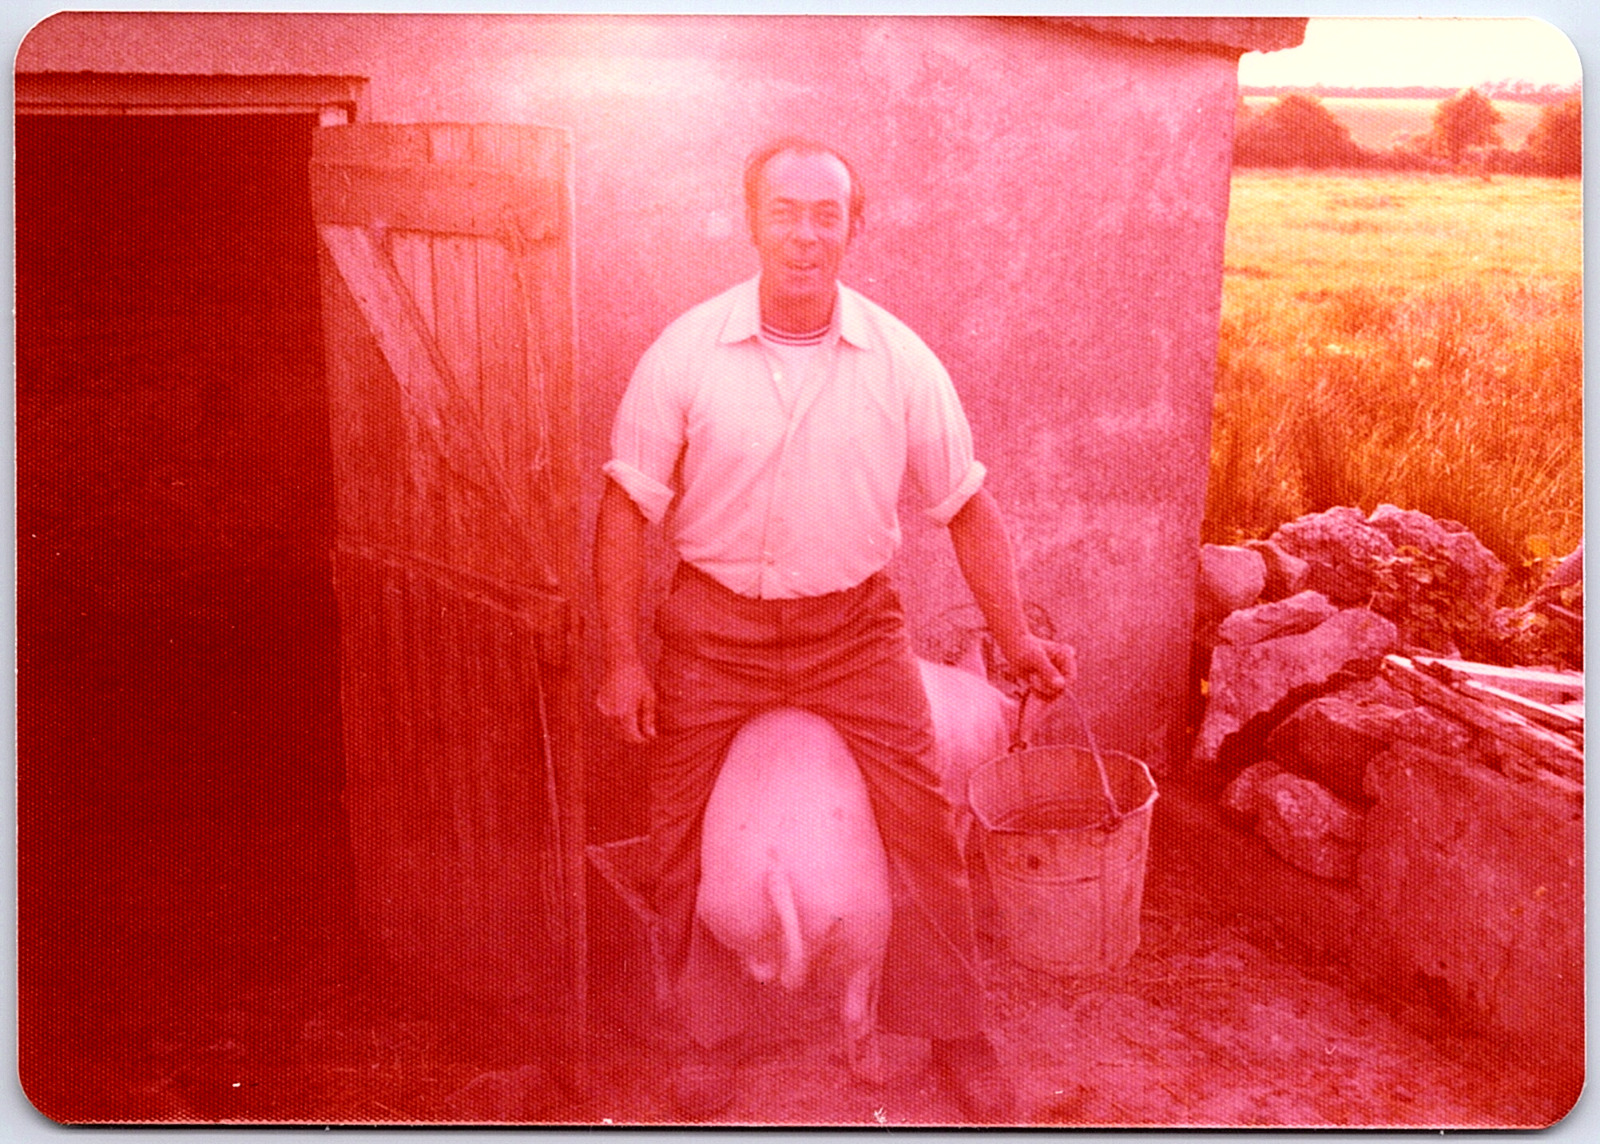 Vintage Found Photo - Funny Farmer Man Rides A Big Pig On A Pig Farm In Ireland